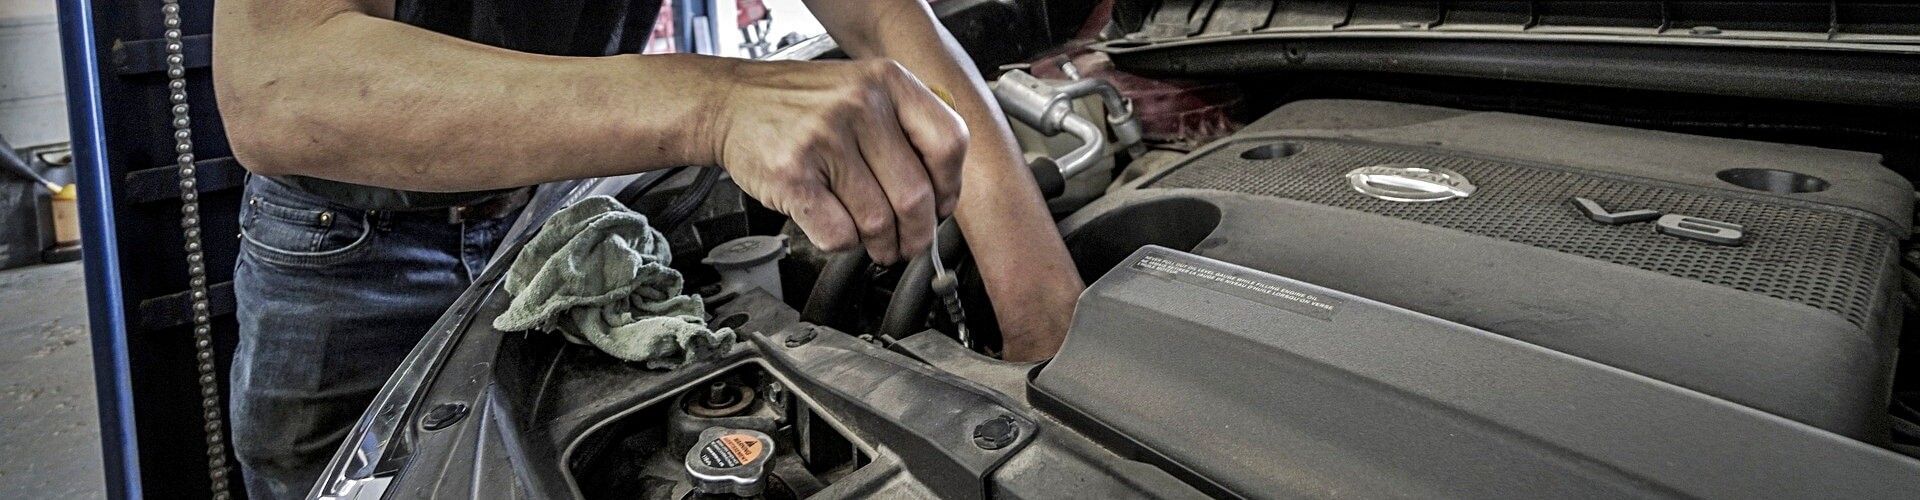 Consecuencias de no cambiar el aceite del coche